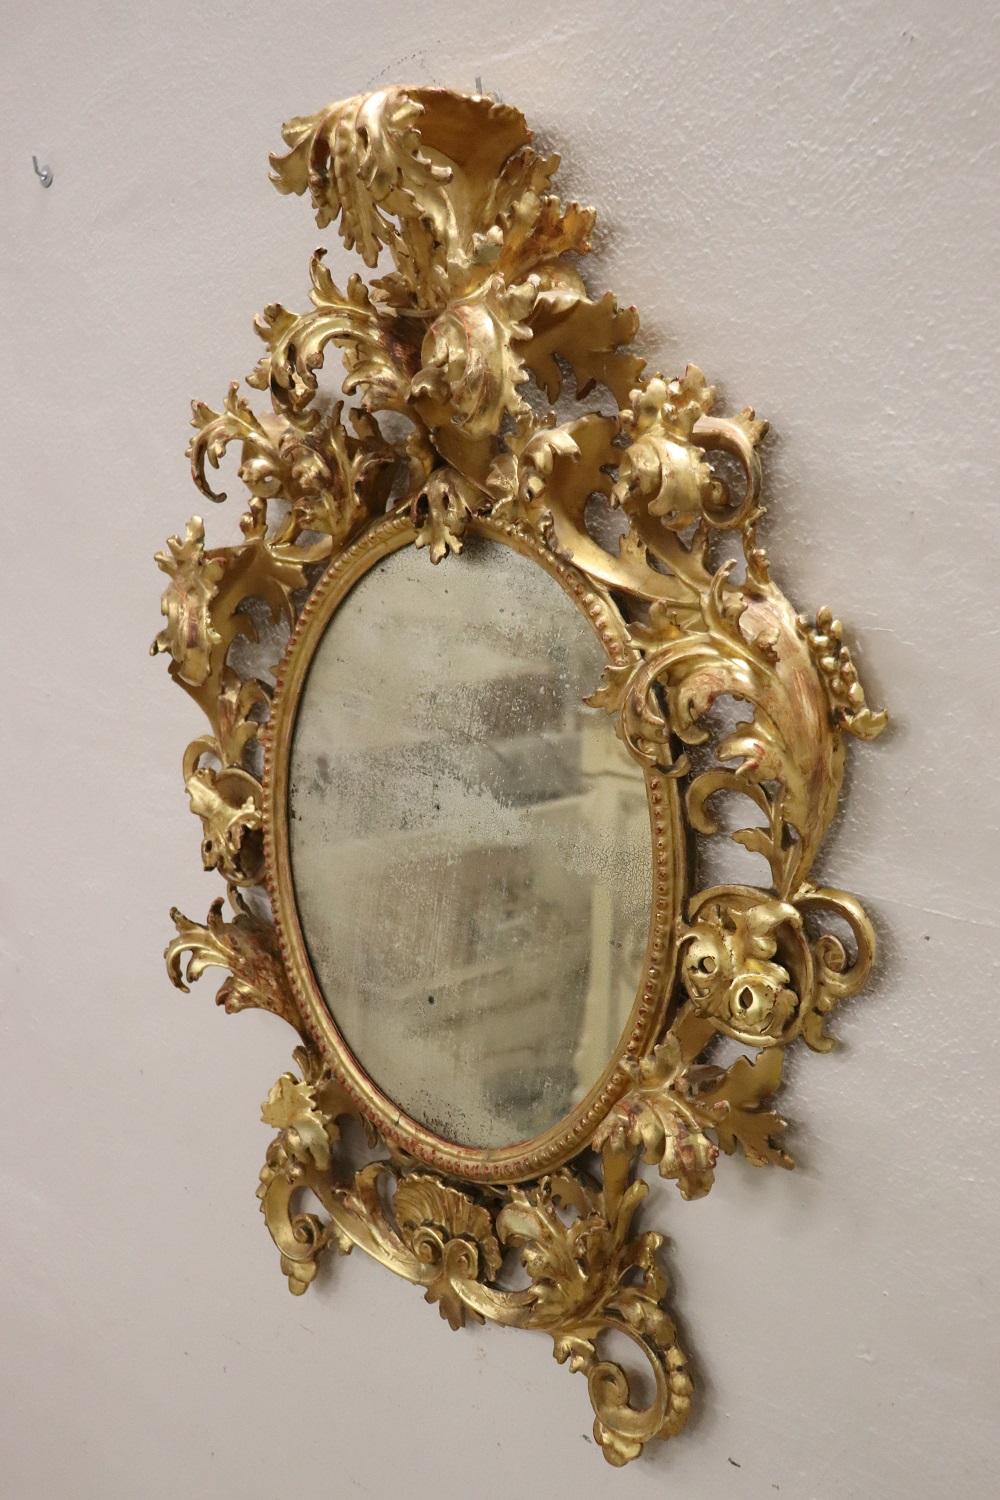 Sehr wichtiger, schöner und eleganter ovaler Wandspiegel aus der Barockzeit, 1750. Ganz aus geschnitztem und vergoldetem Holz mit Blattgold. Der reiche Schnitzdekor mit Voluten und Akanthusblättern, die sich auf der Vorderseite aufrollen, wird